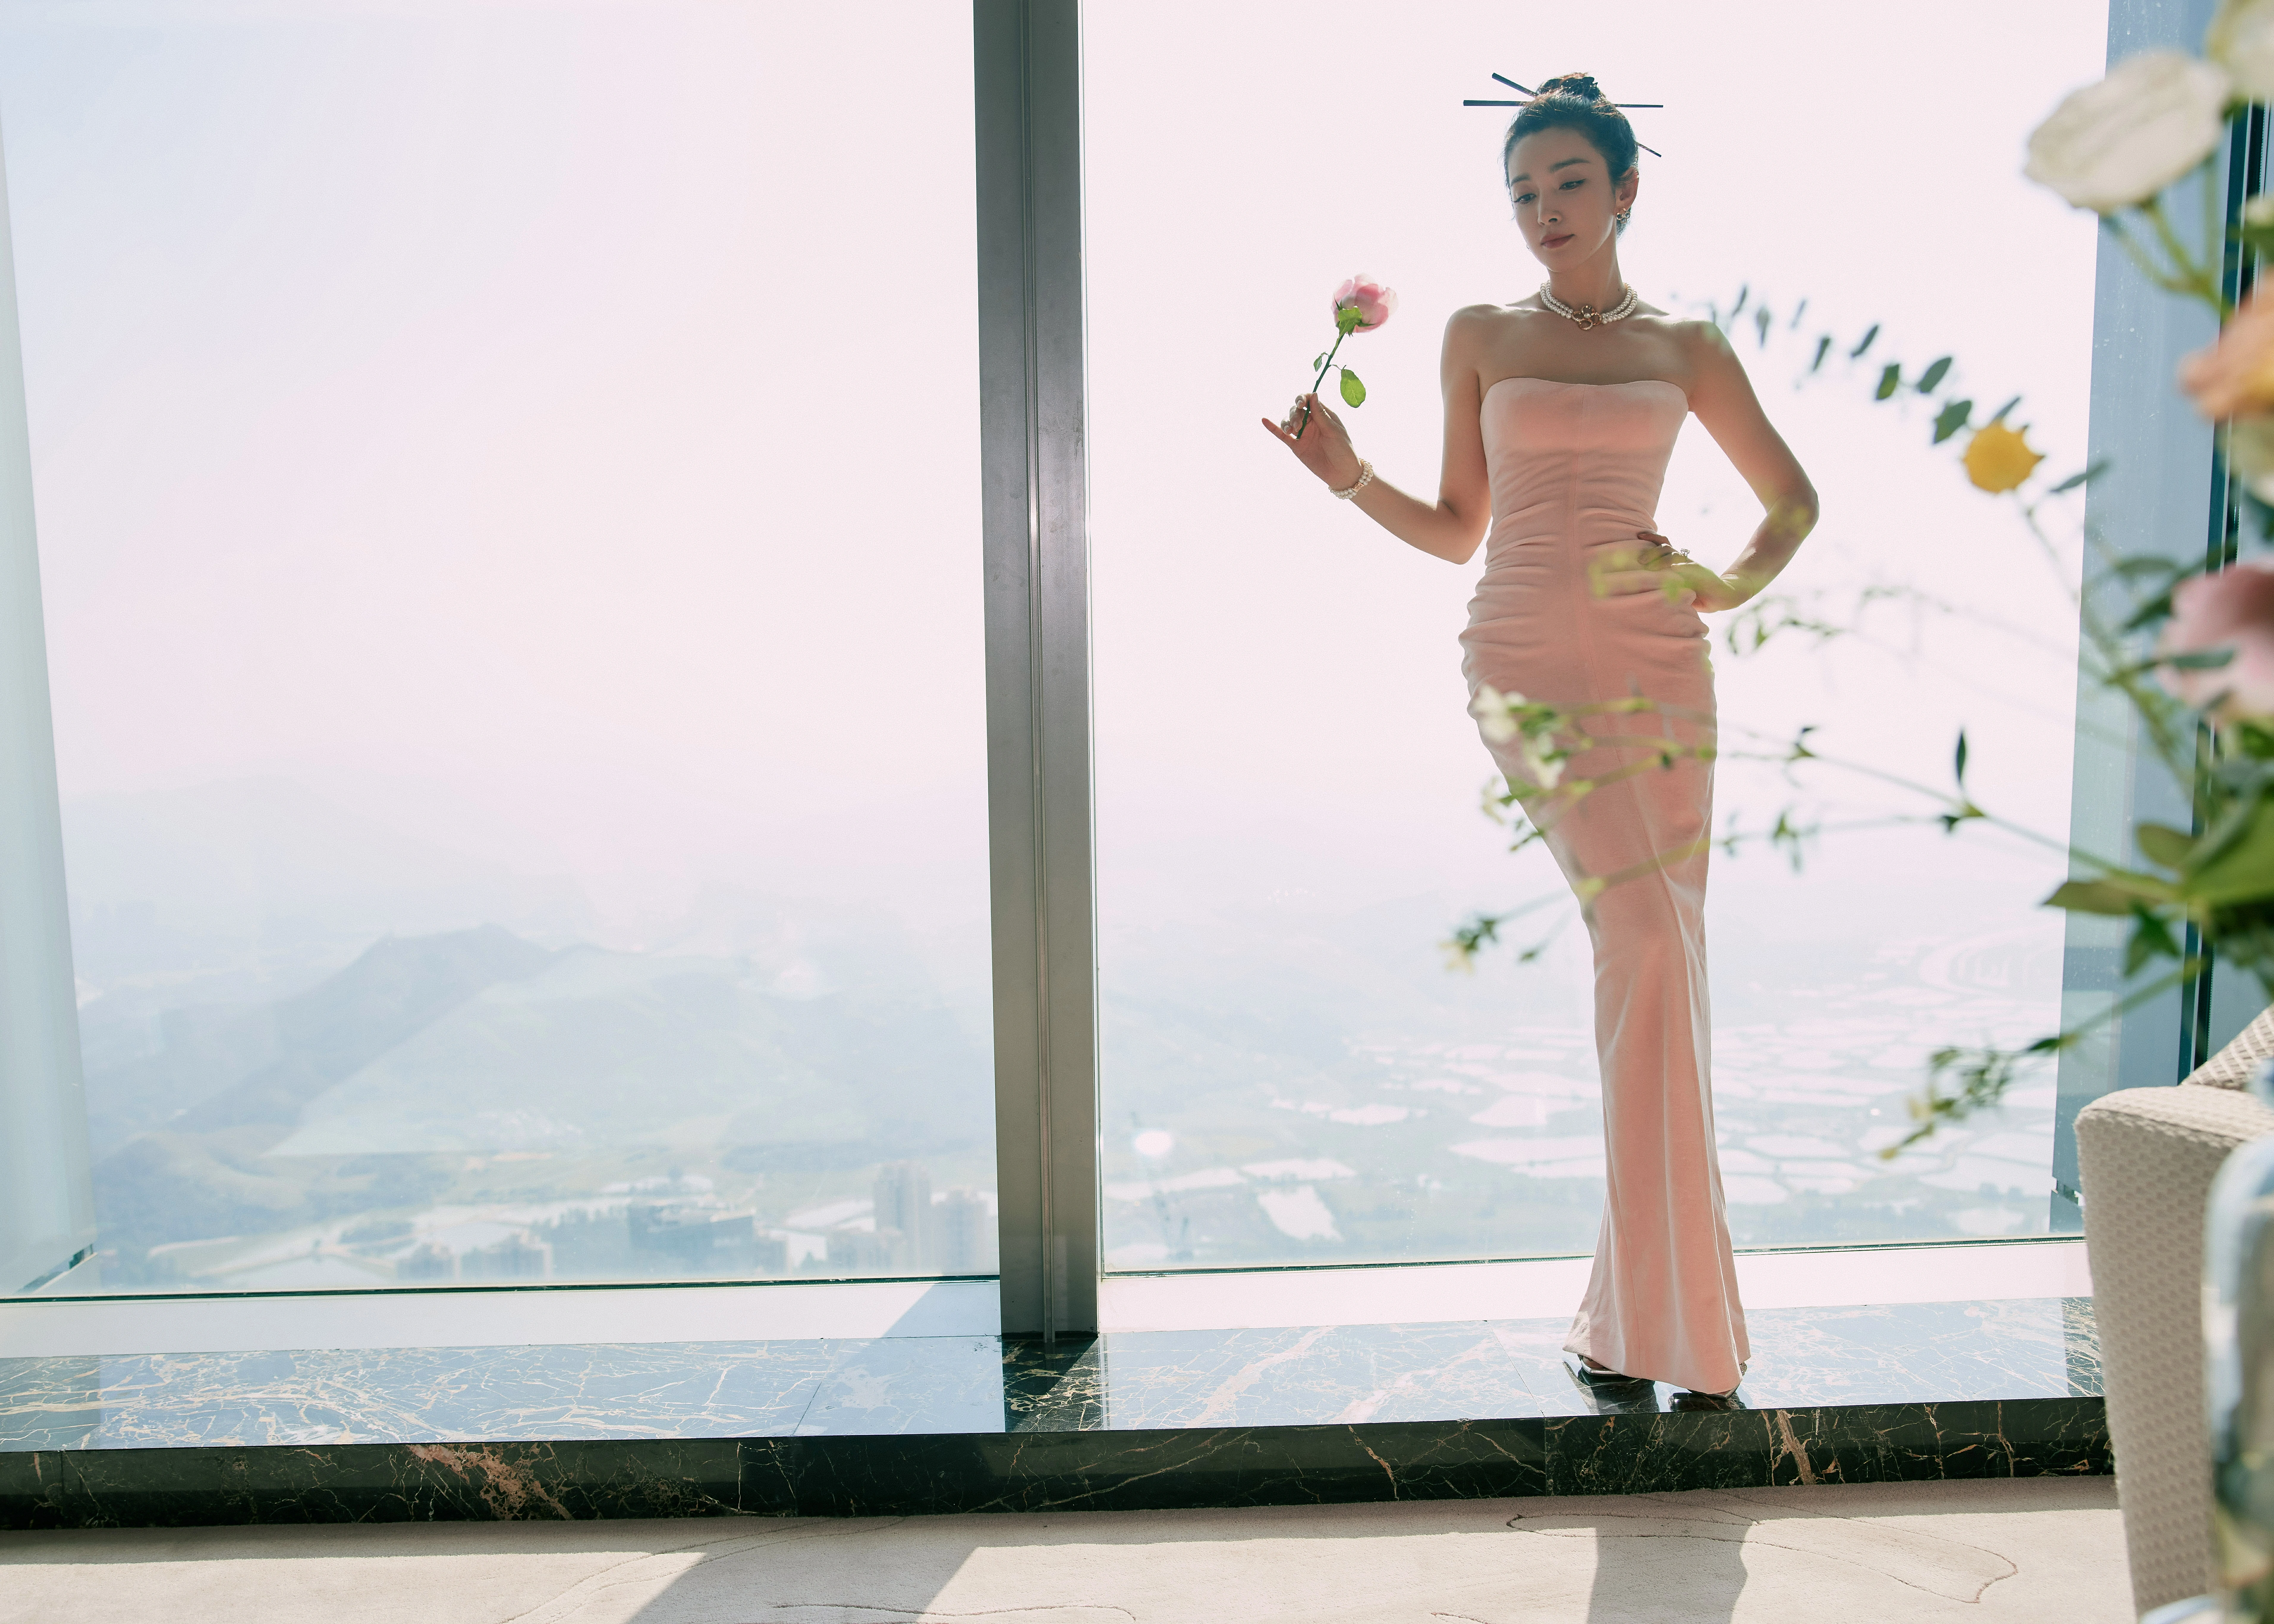 李冰冰活动造型写真释出 着粉色抹胸裙搭粉色西装时尚感满分,12